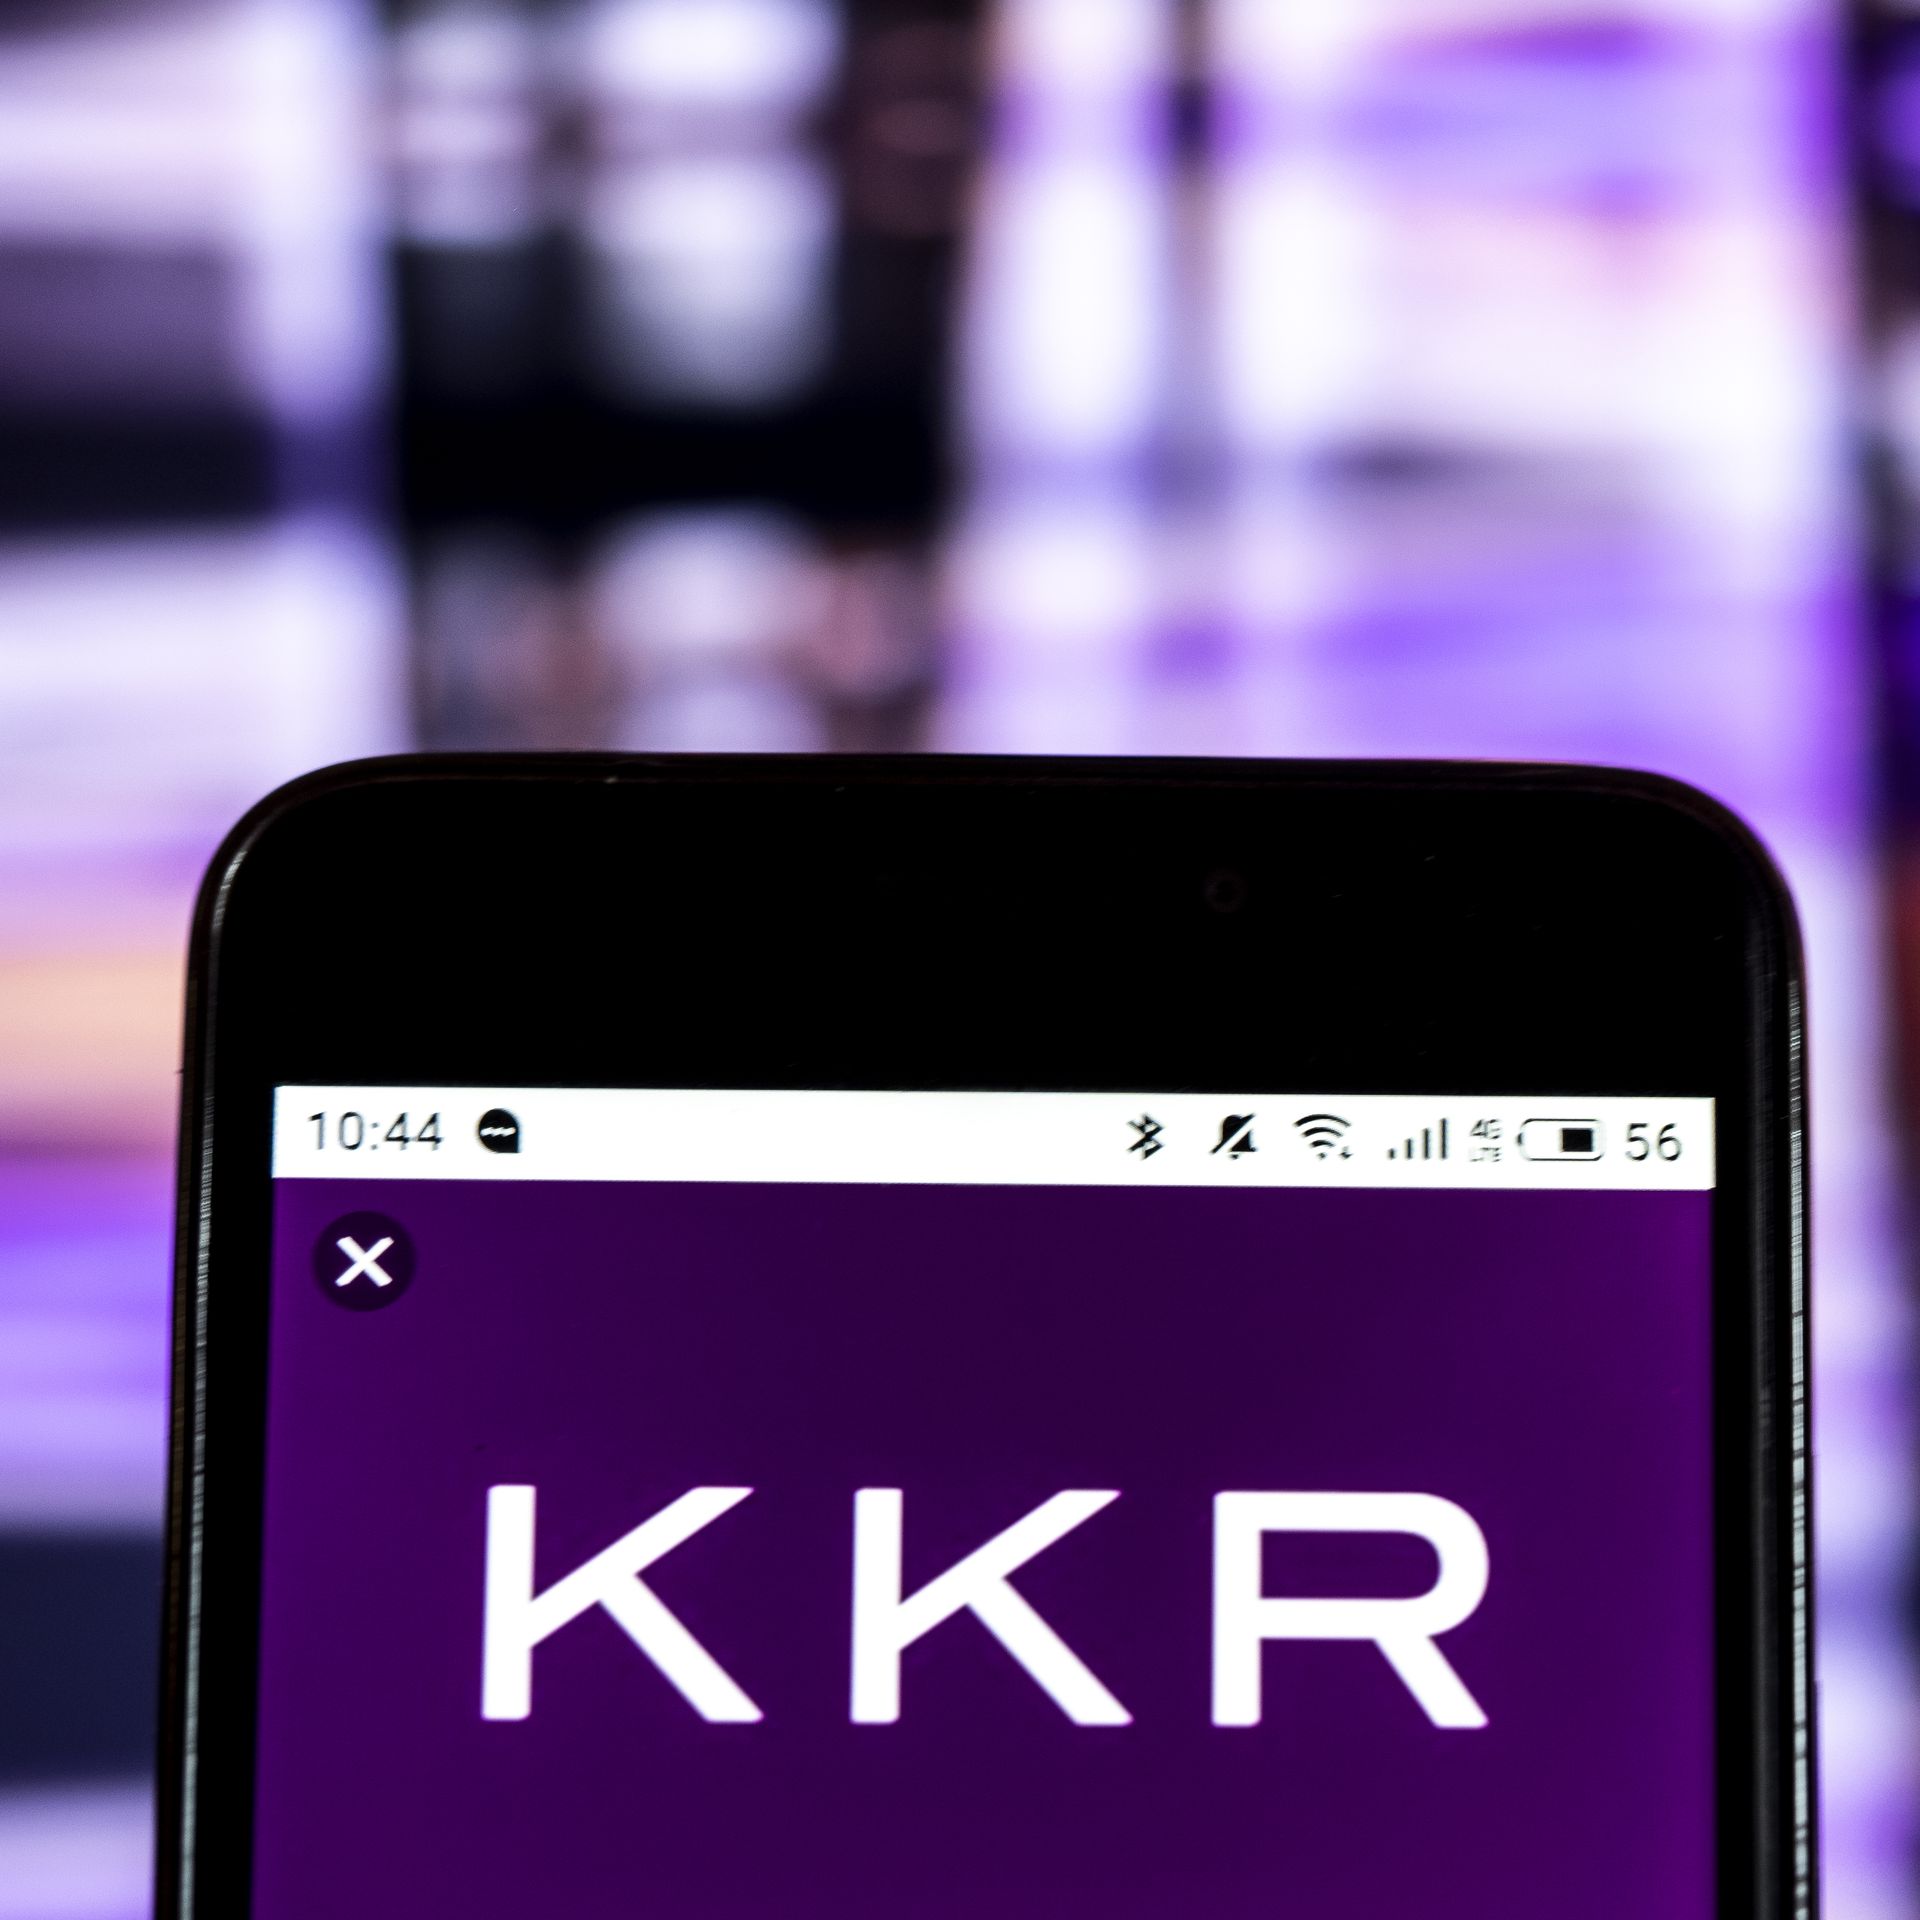 A KKR logo on a phone